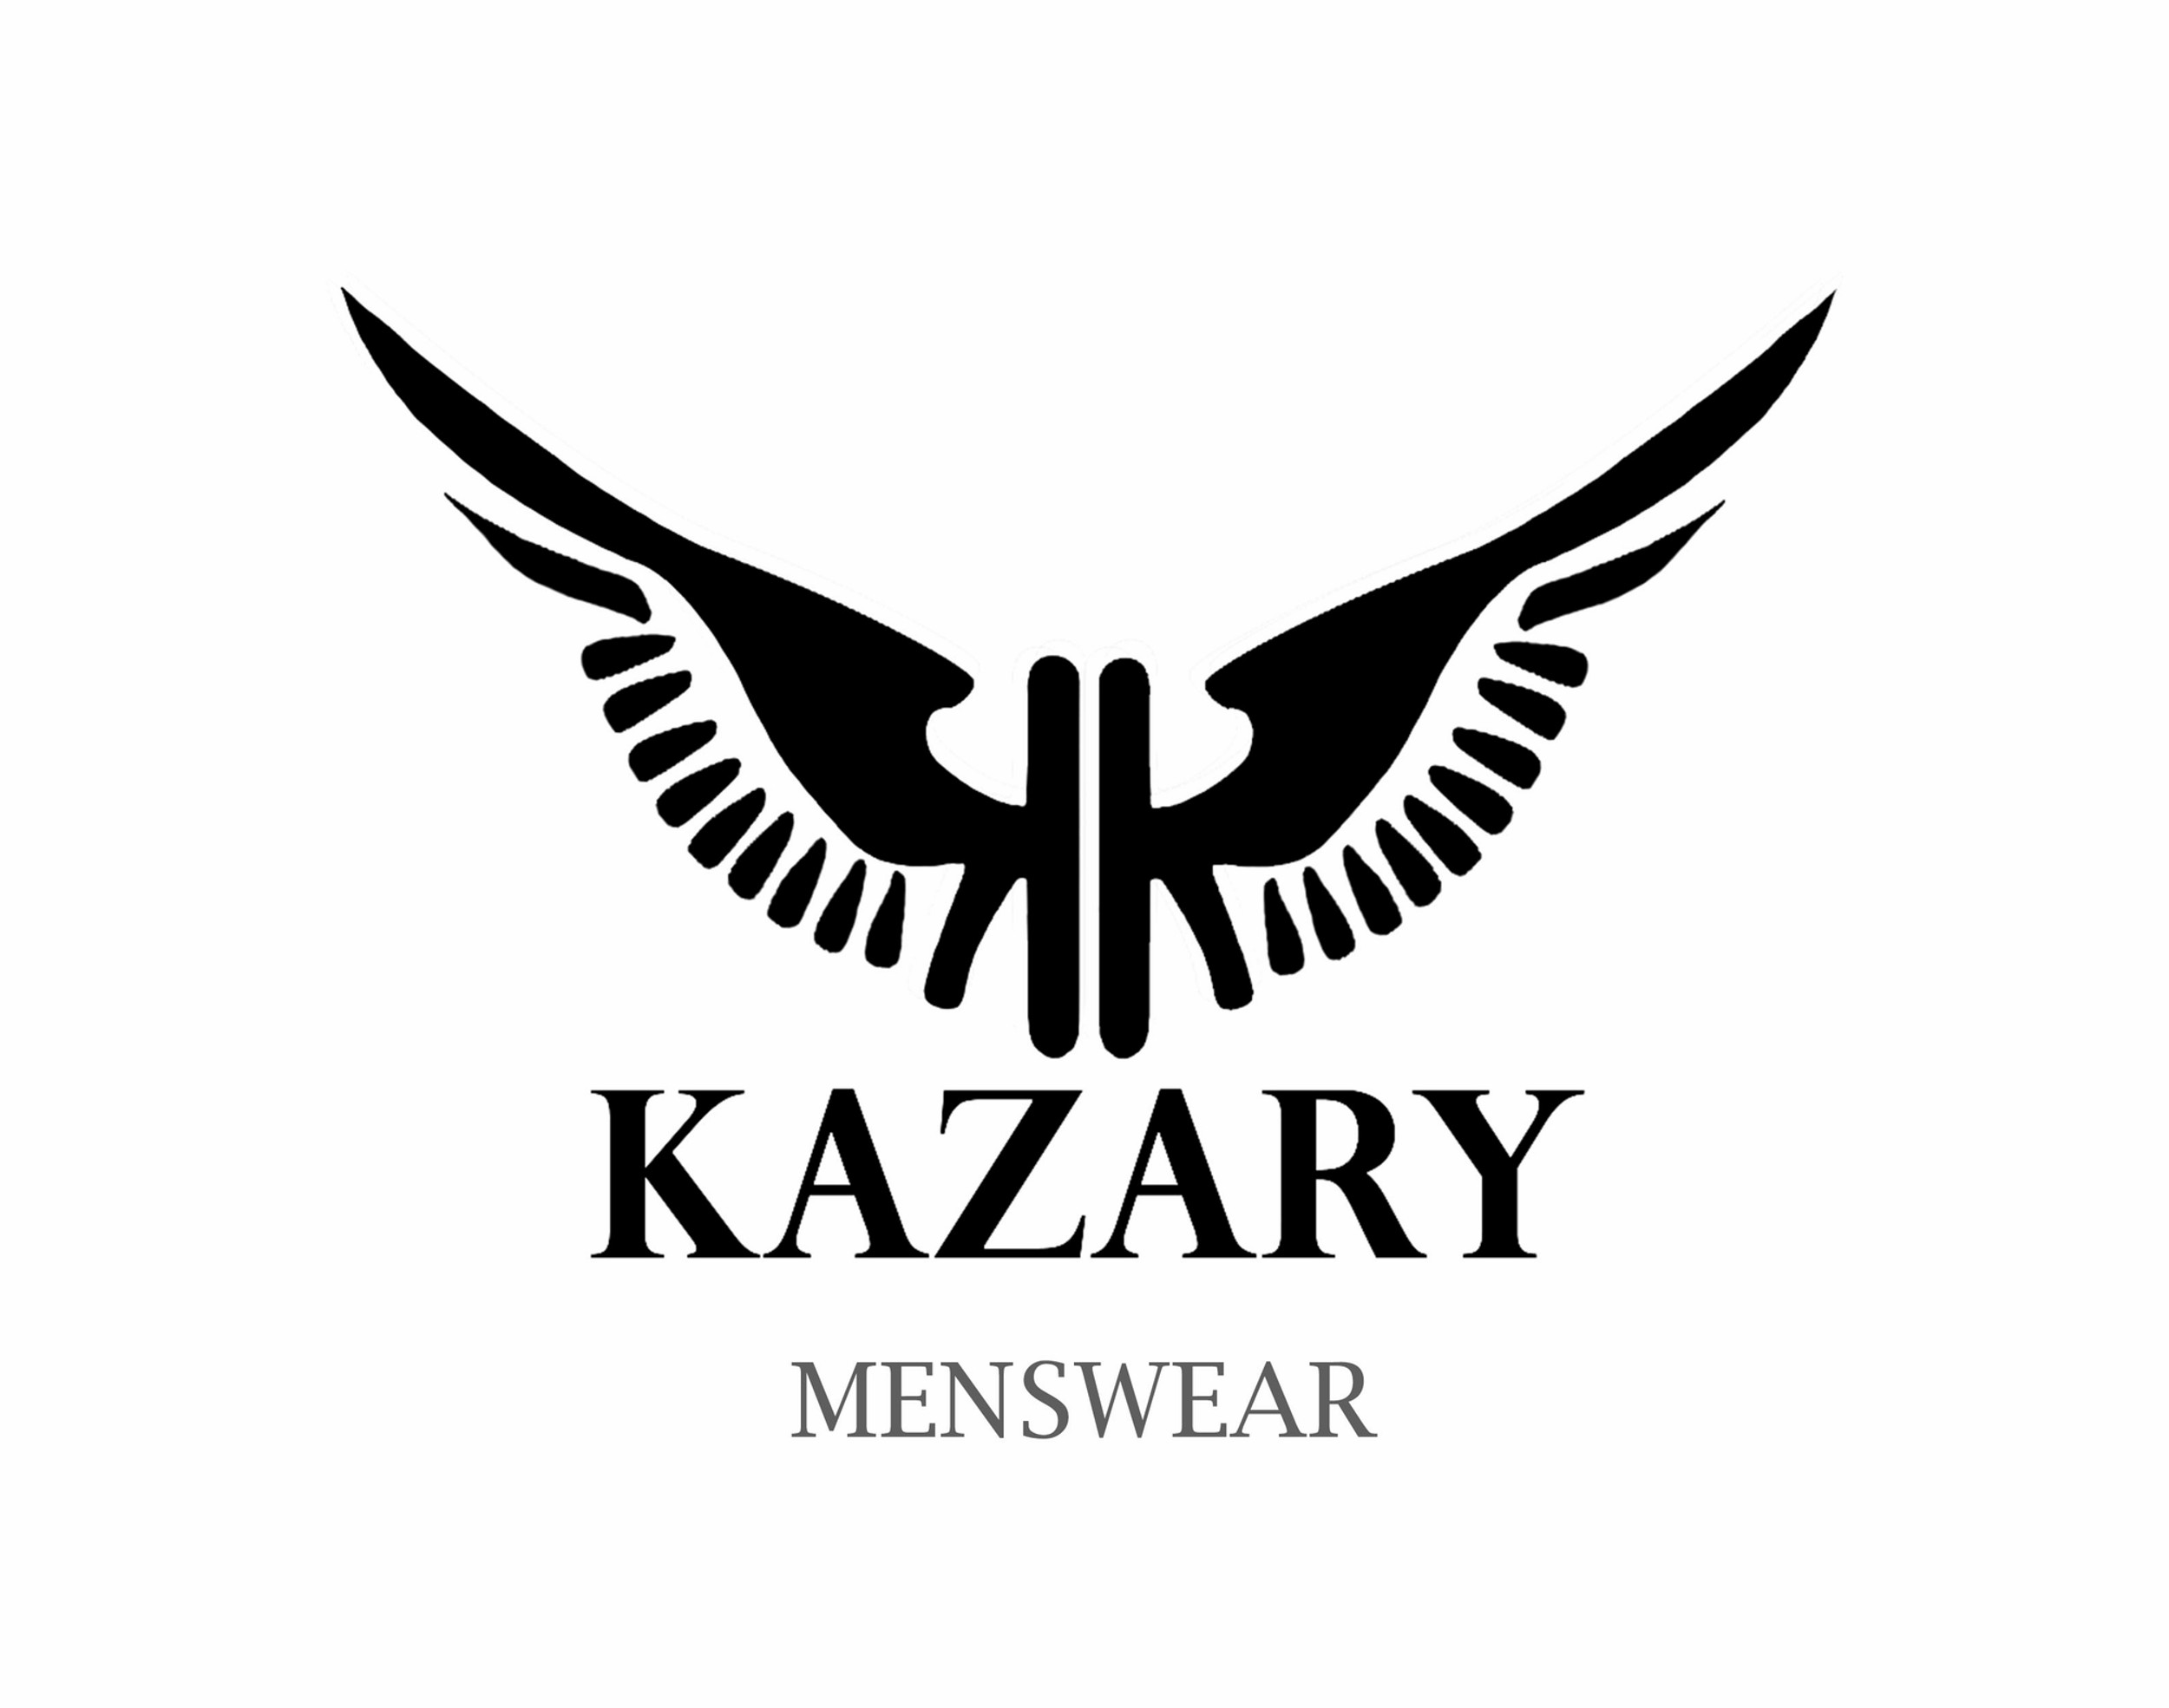 kazaray